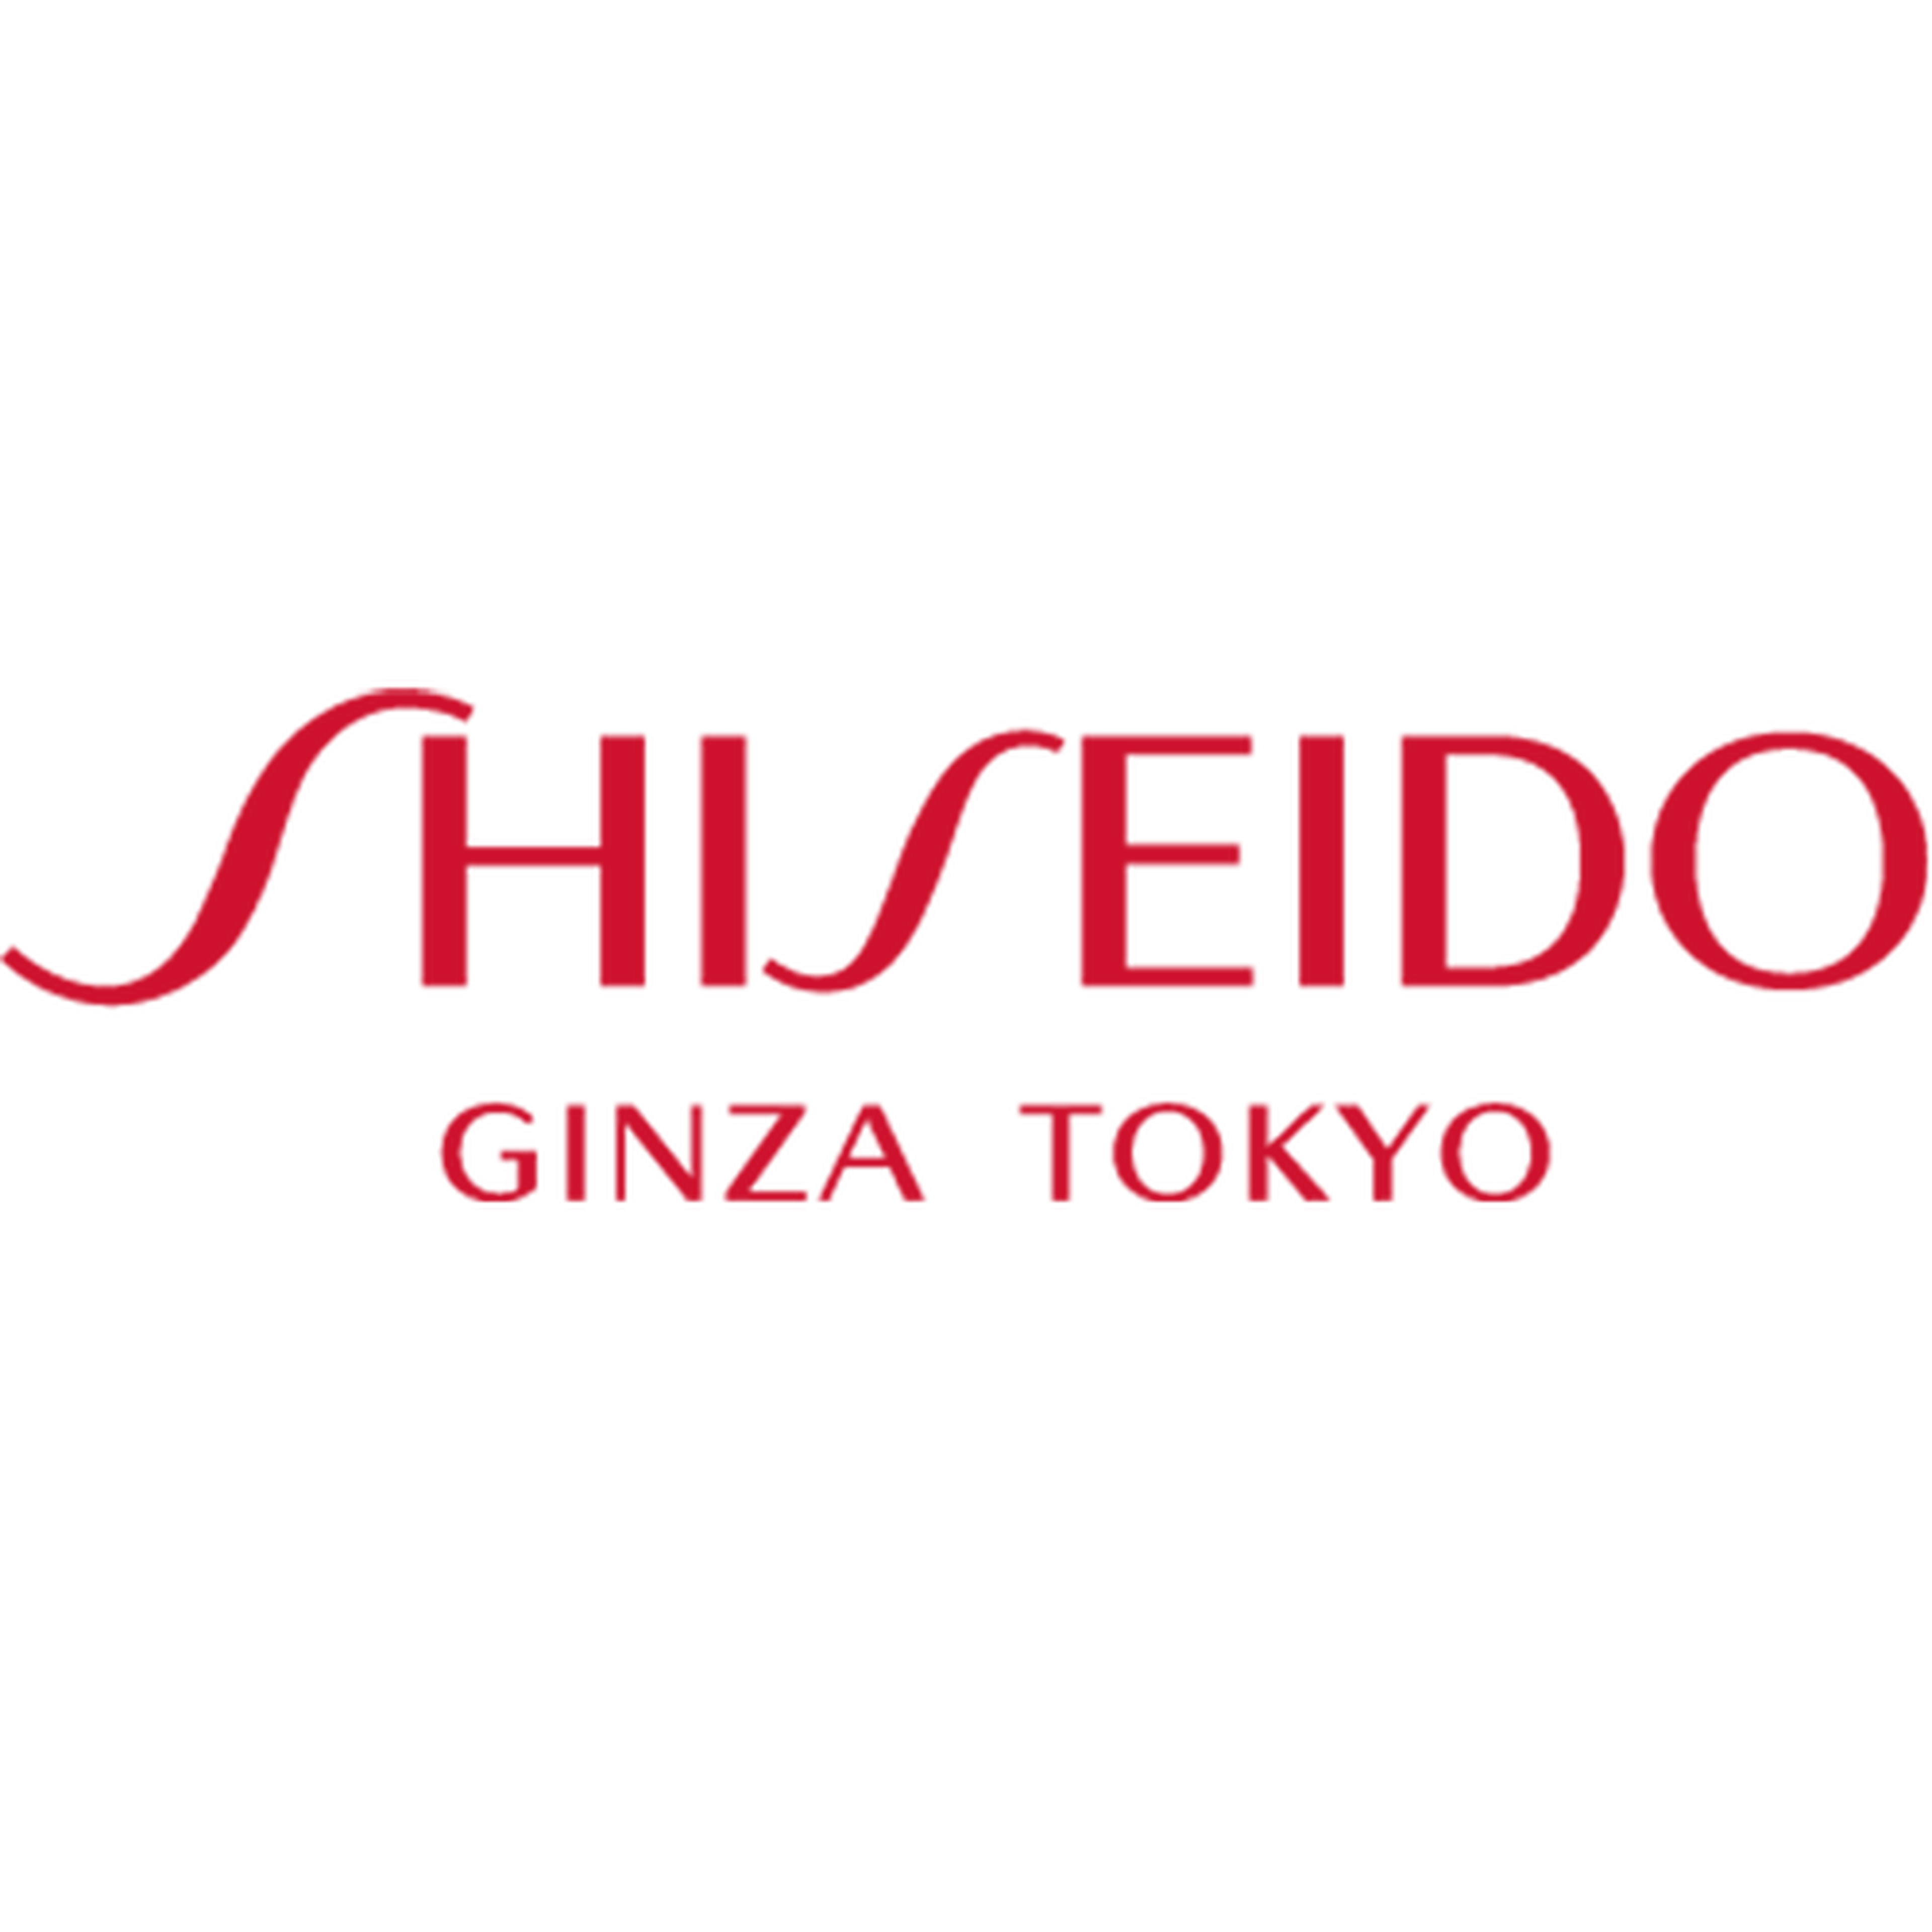 Shiseido For Men logotype